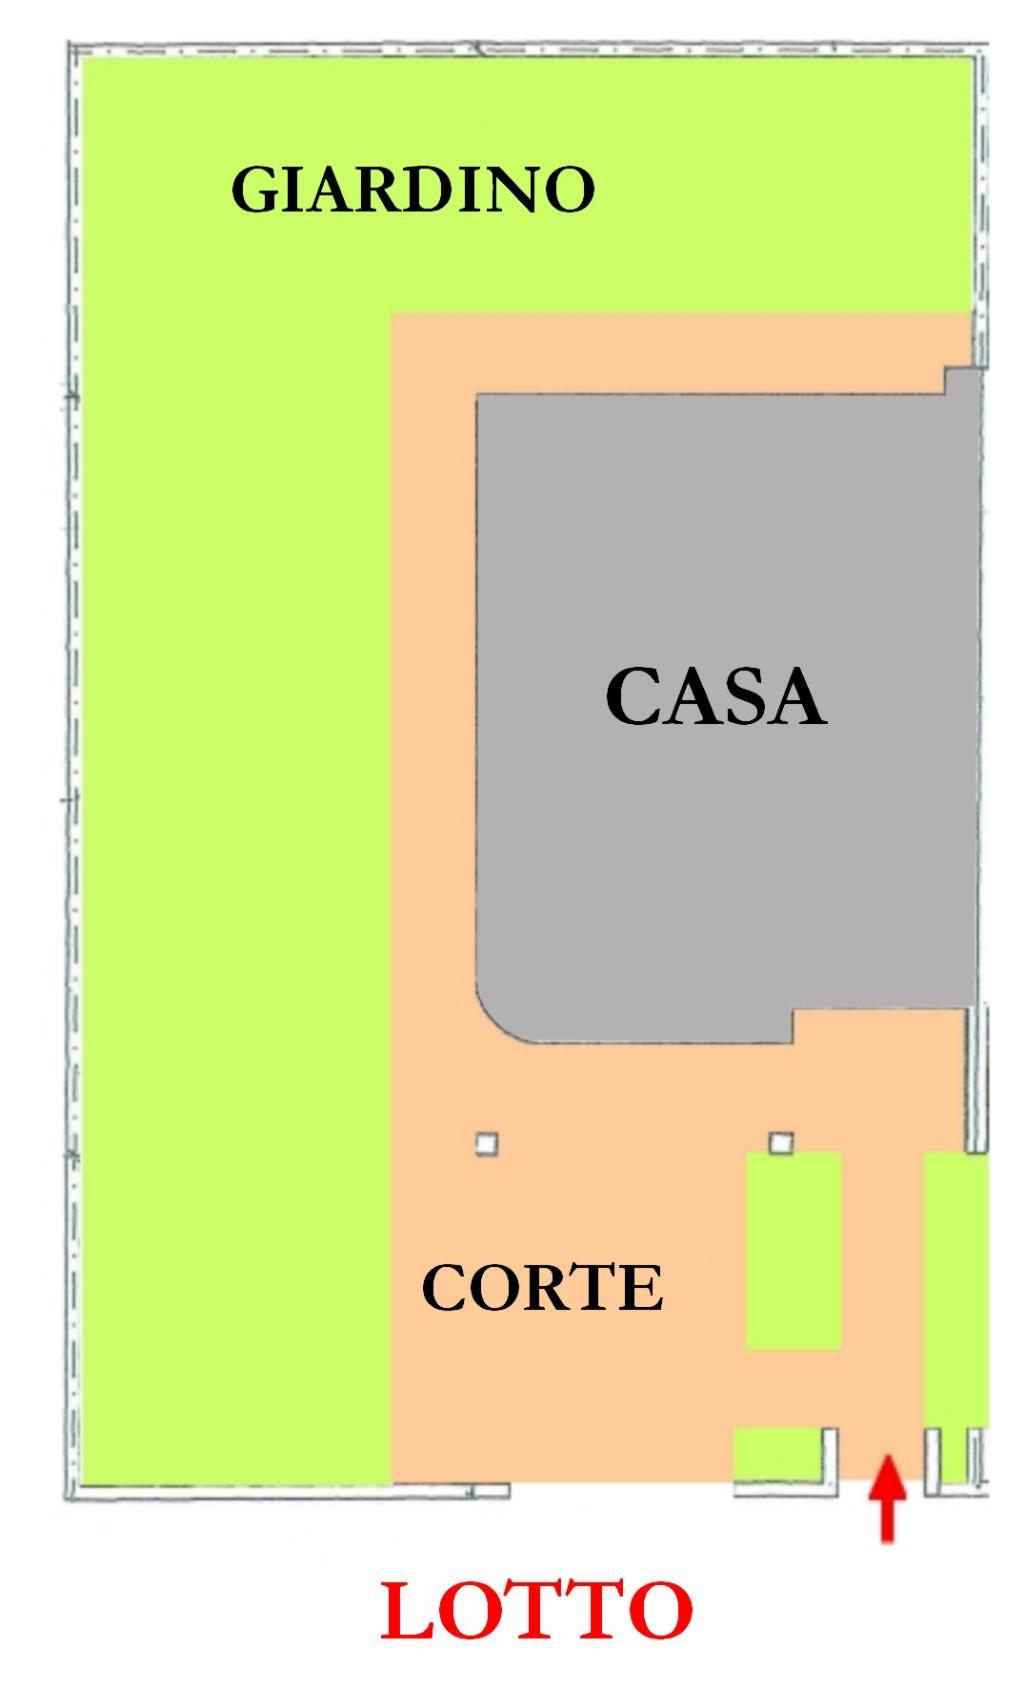 Vendita di una porzione di bifamiliare a Cesena, con tre camere da letto, quattro bagni, ampia zona giorno, garage, cantina, balconi e corte